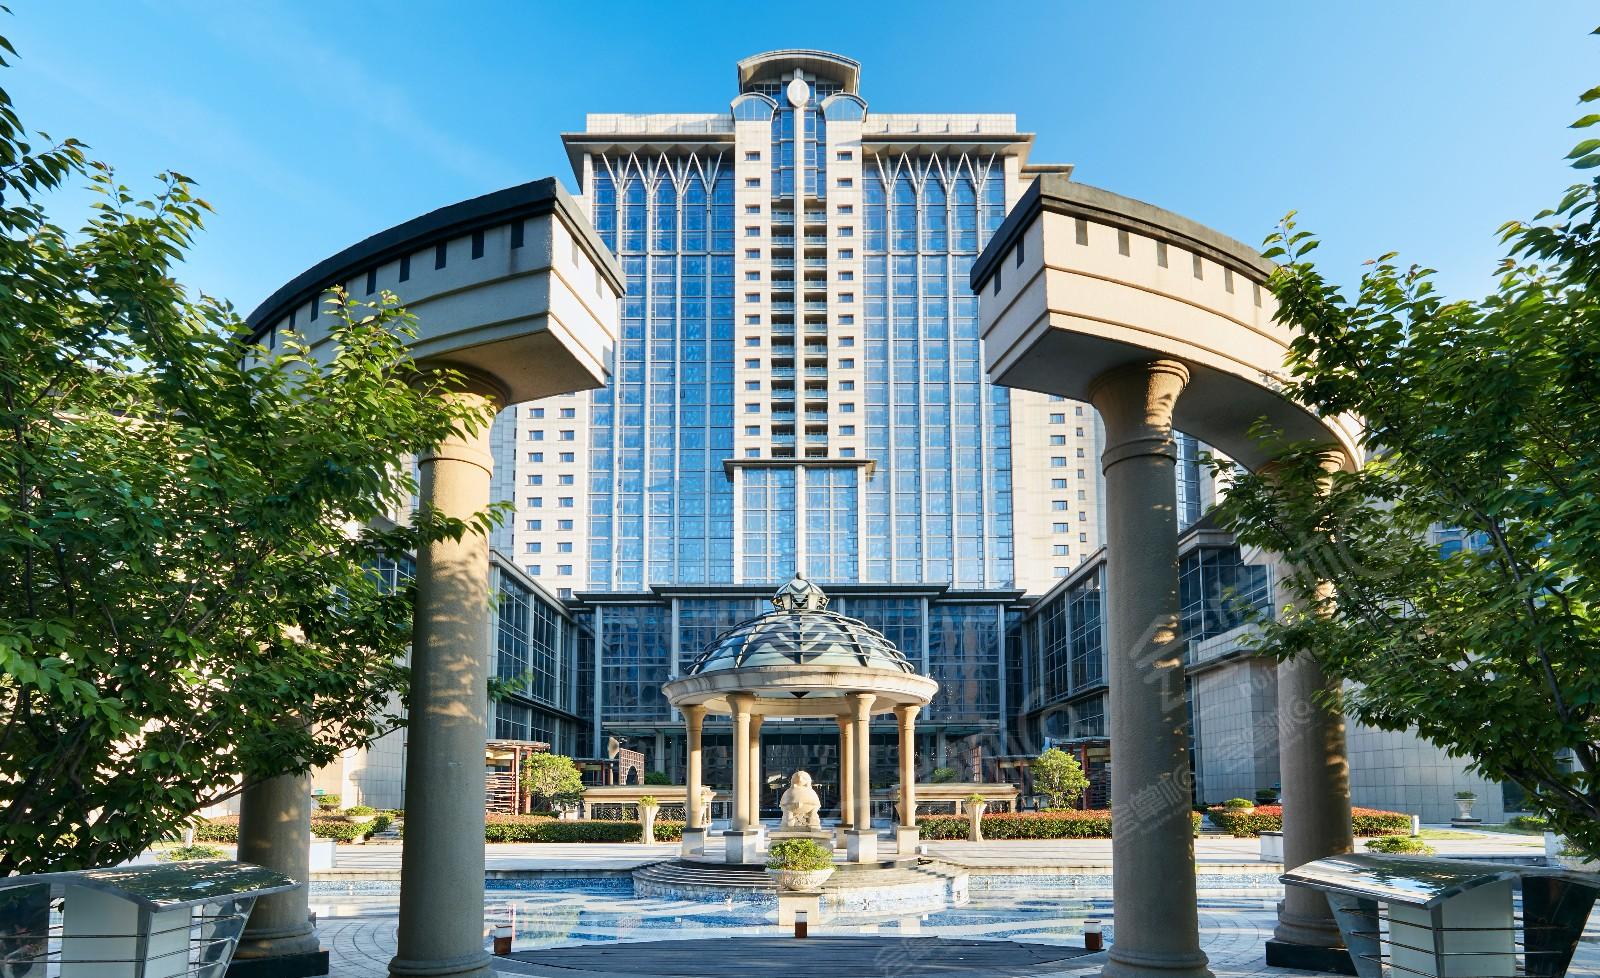 宁波鄞州区150、250、350、450、550人会议场地推荐:宁波洲际酒店